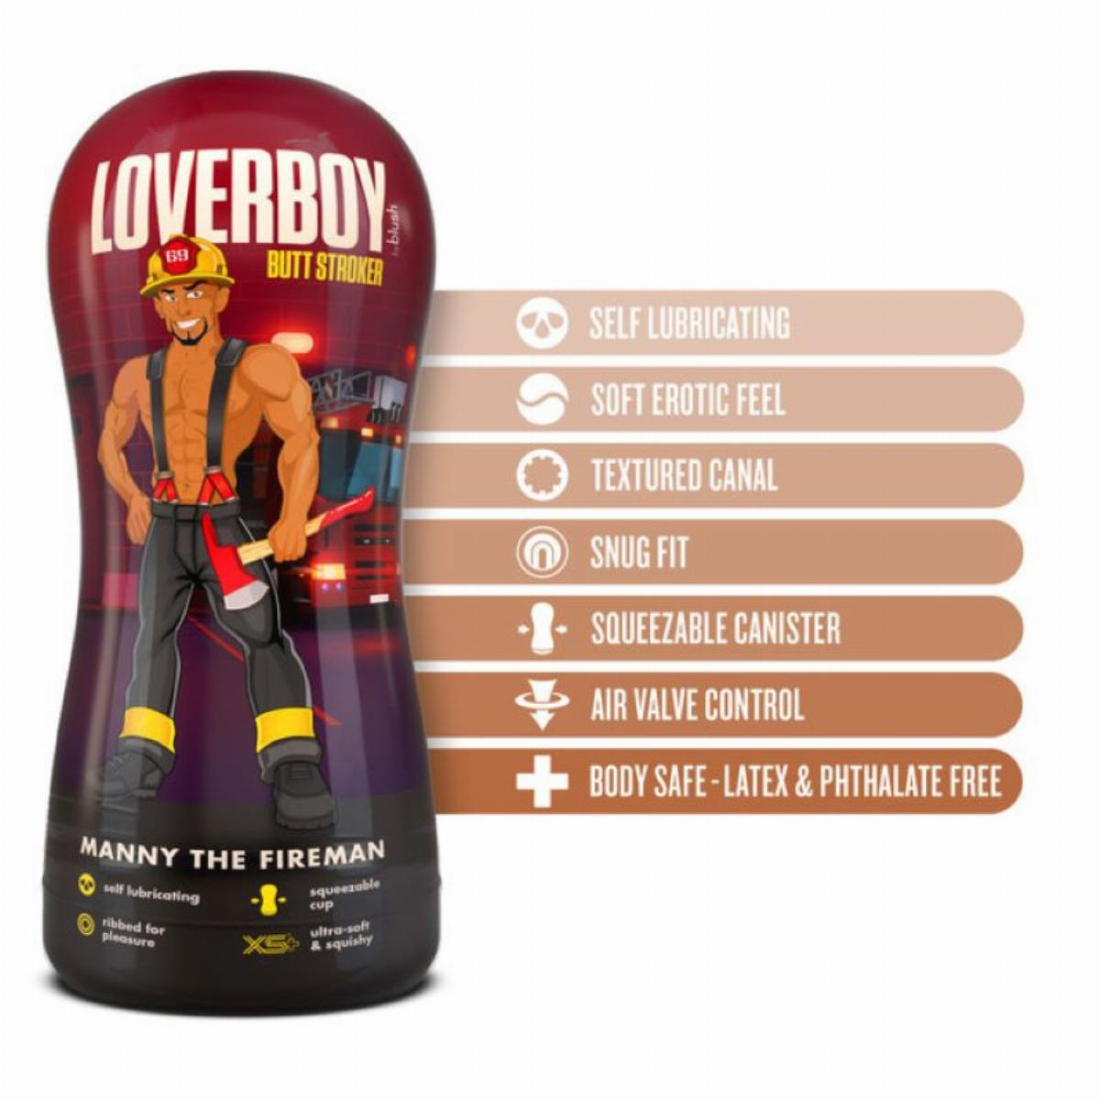 De Loverboy masturbator van Blush heeft een getinte anus opening. Gemaakt voor gay mannen en te koop bij Flavourez.